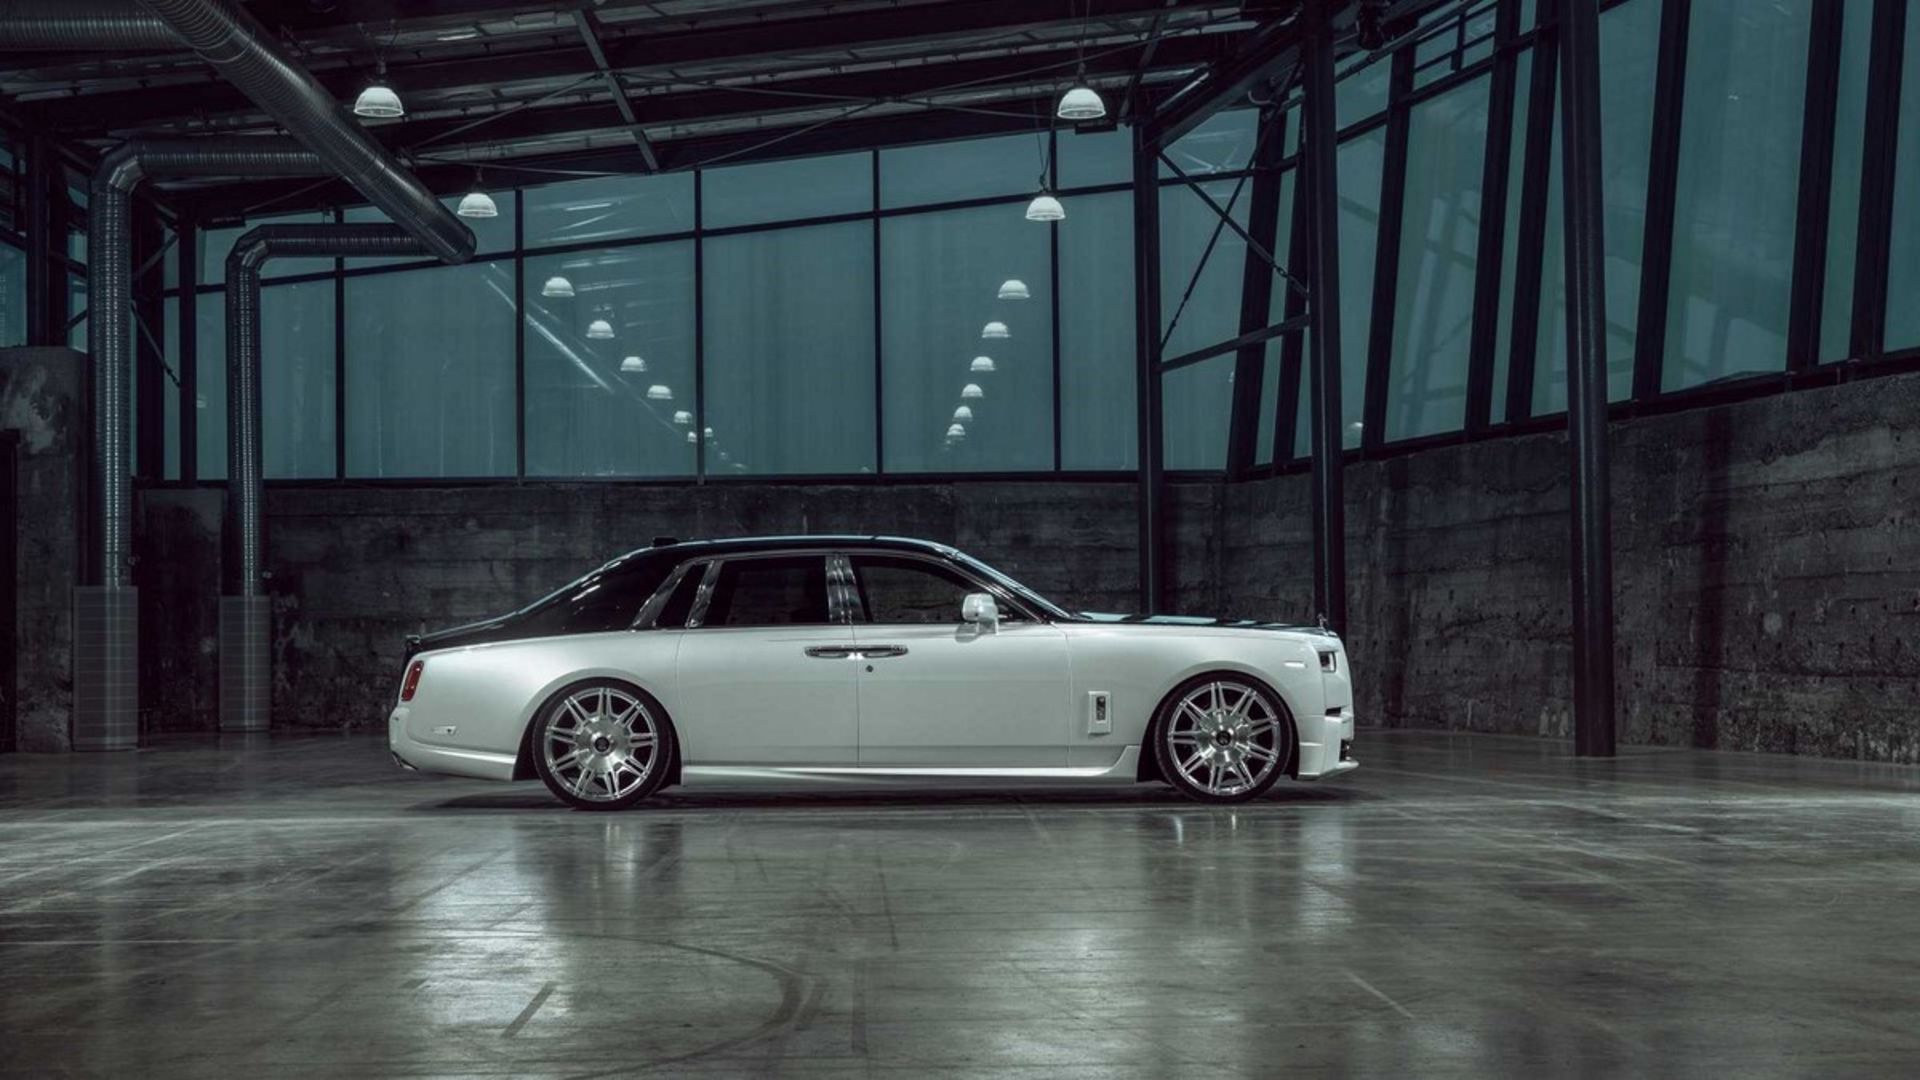 Rolls-Royce Phantom SPOFEC